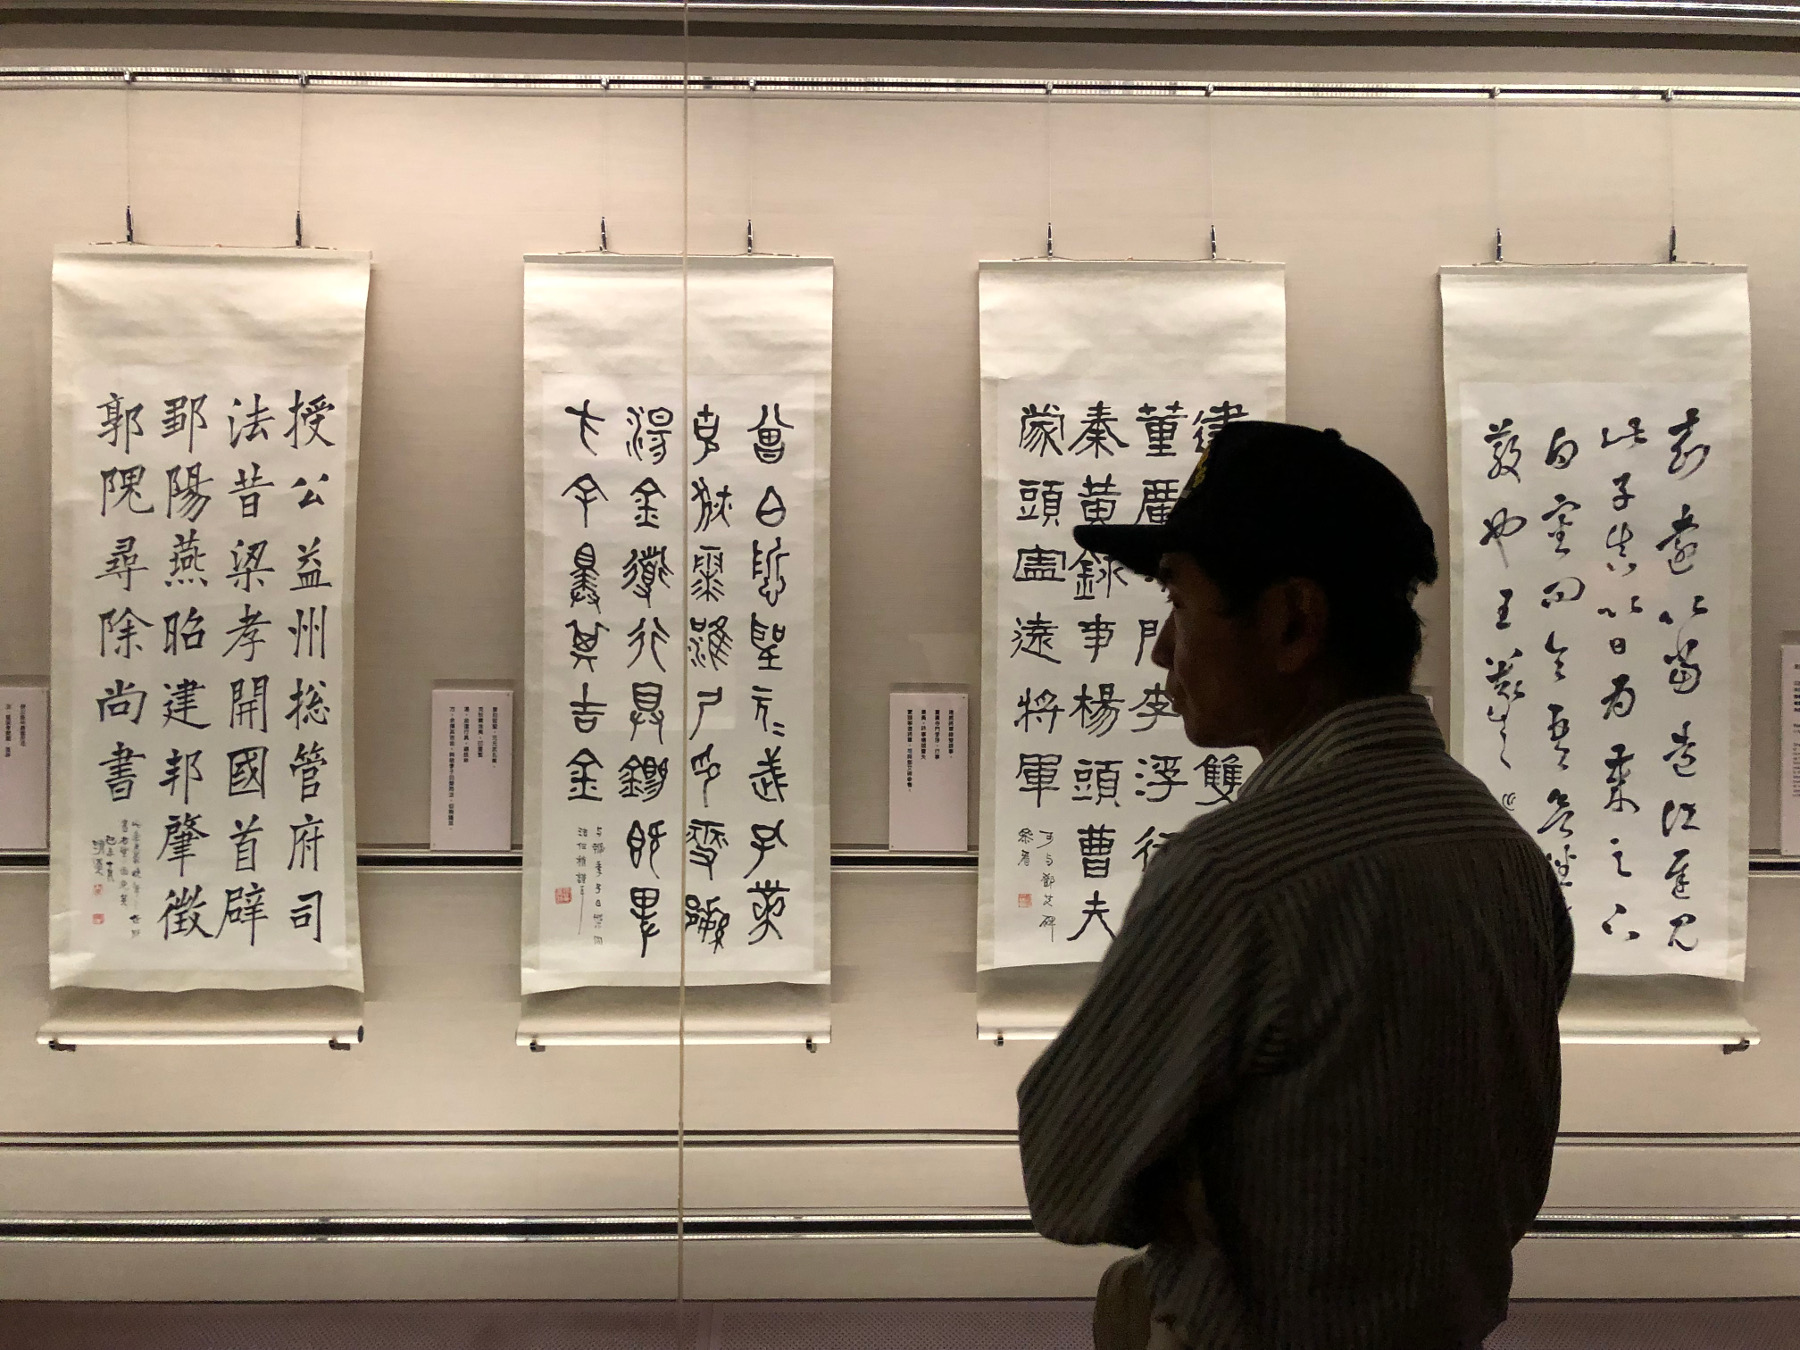 Tajwańska kaligrafia - ewolucja systemu znaków chińskich